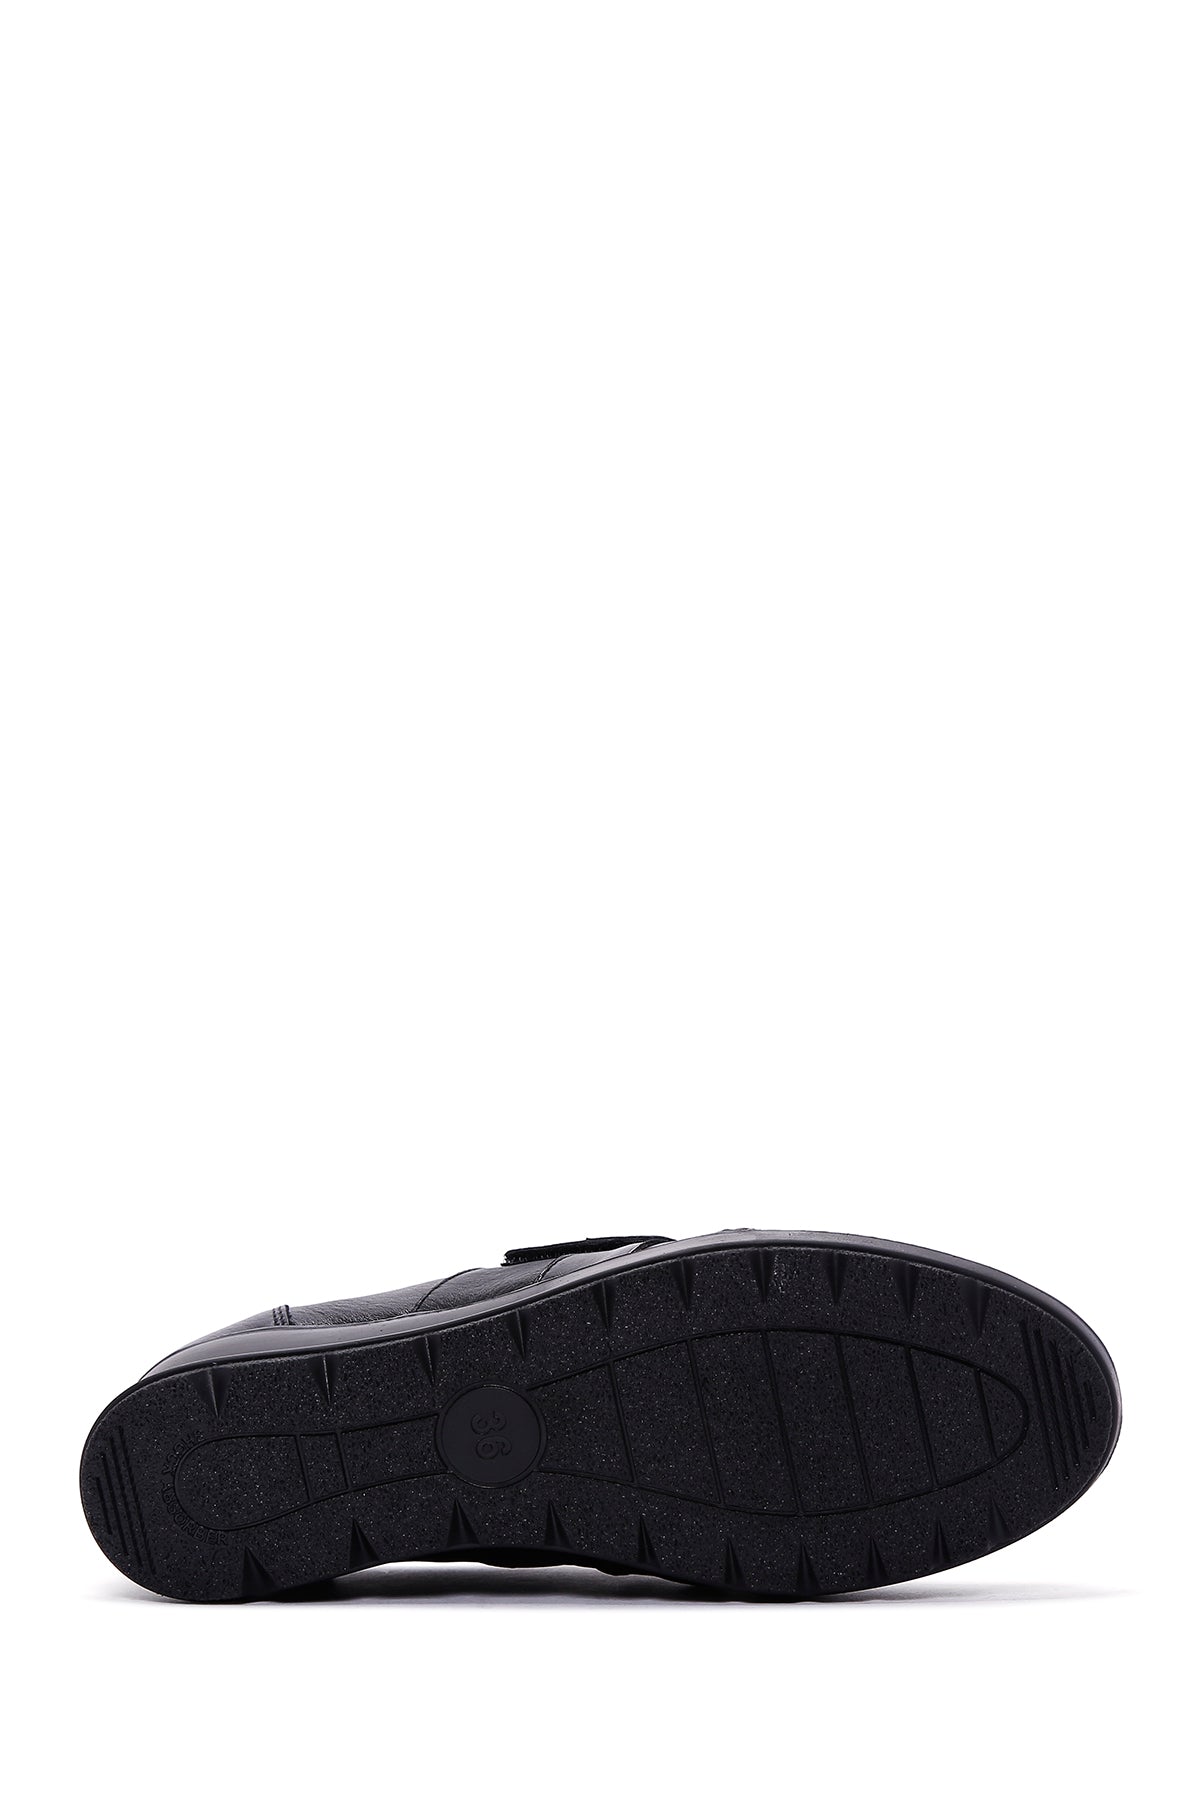 Kadın Siyah Deri Dolgu Topuklu Comfort Ayakkabı